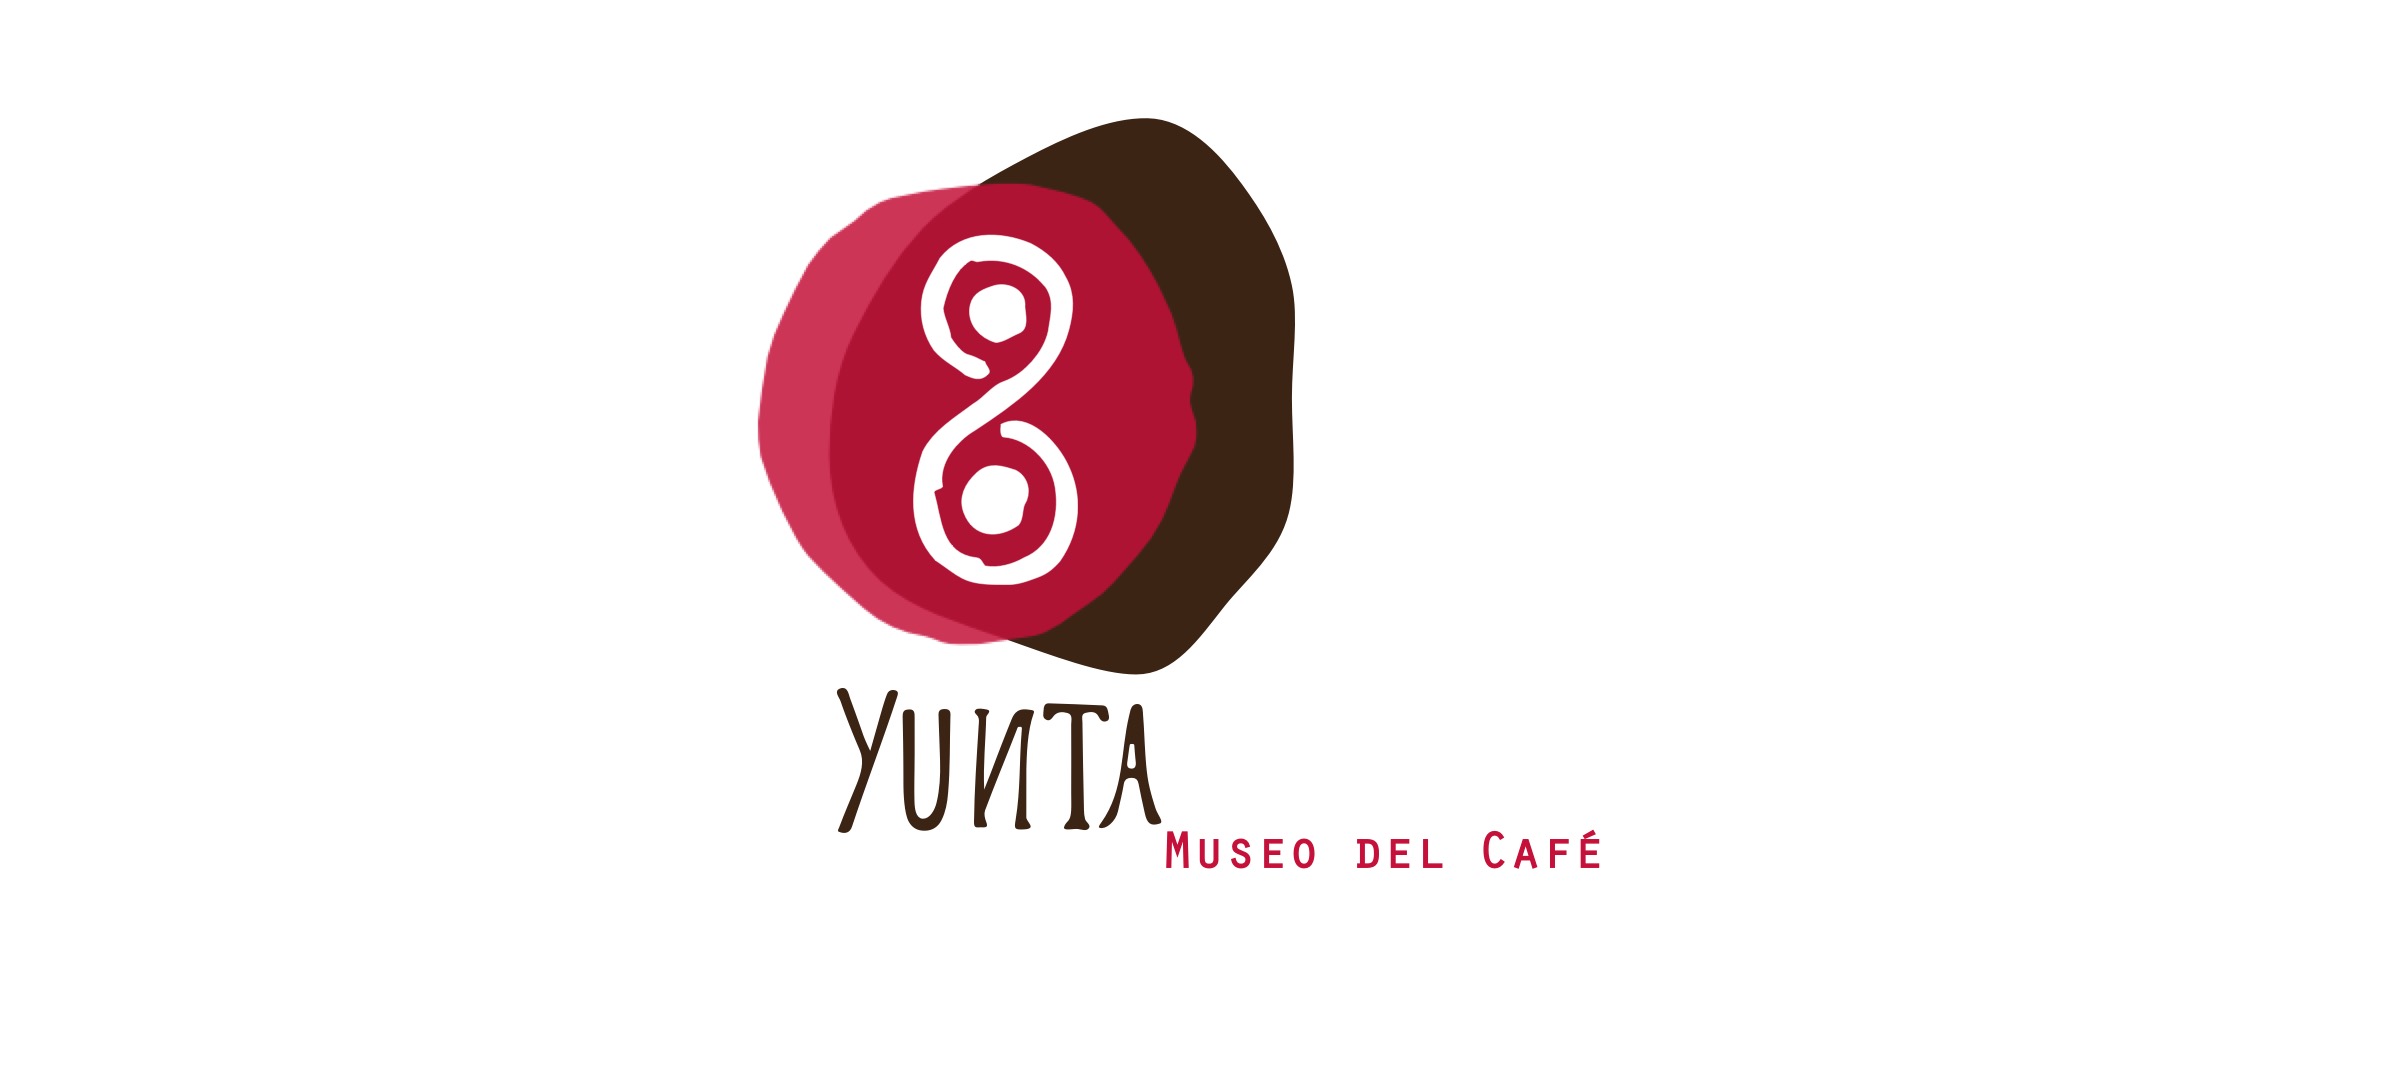 Yunta, Museo del Café